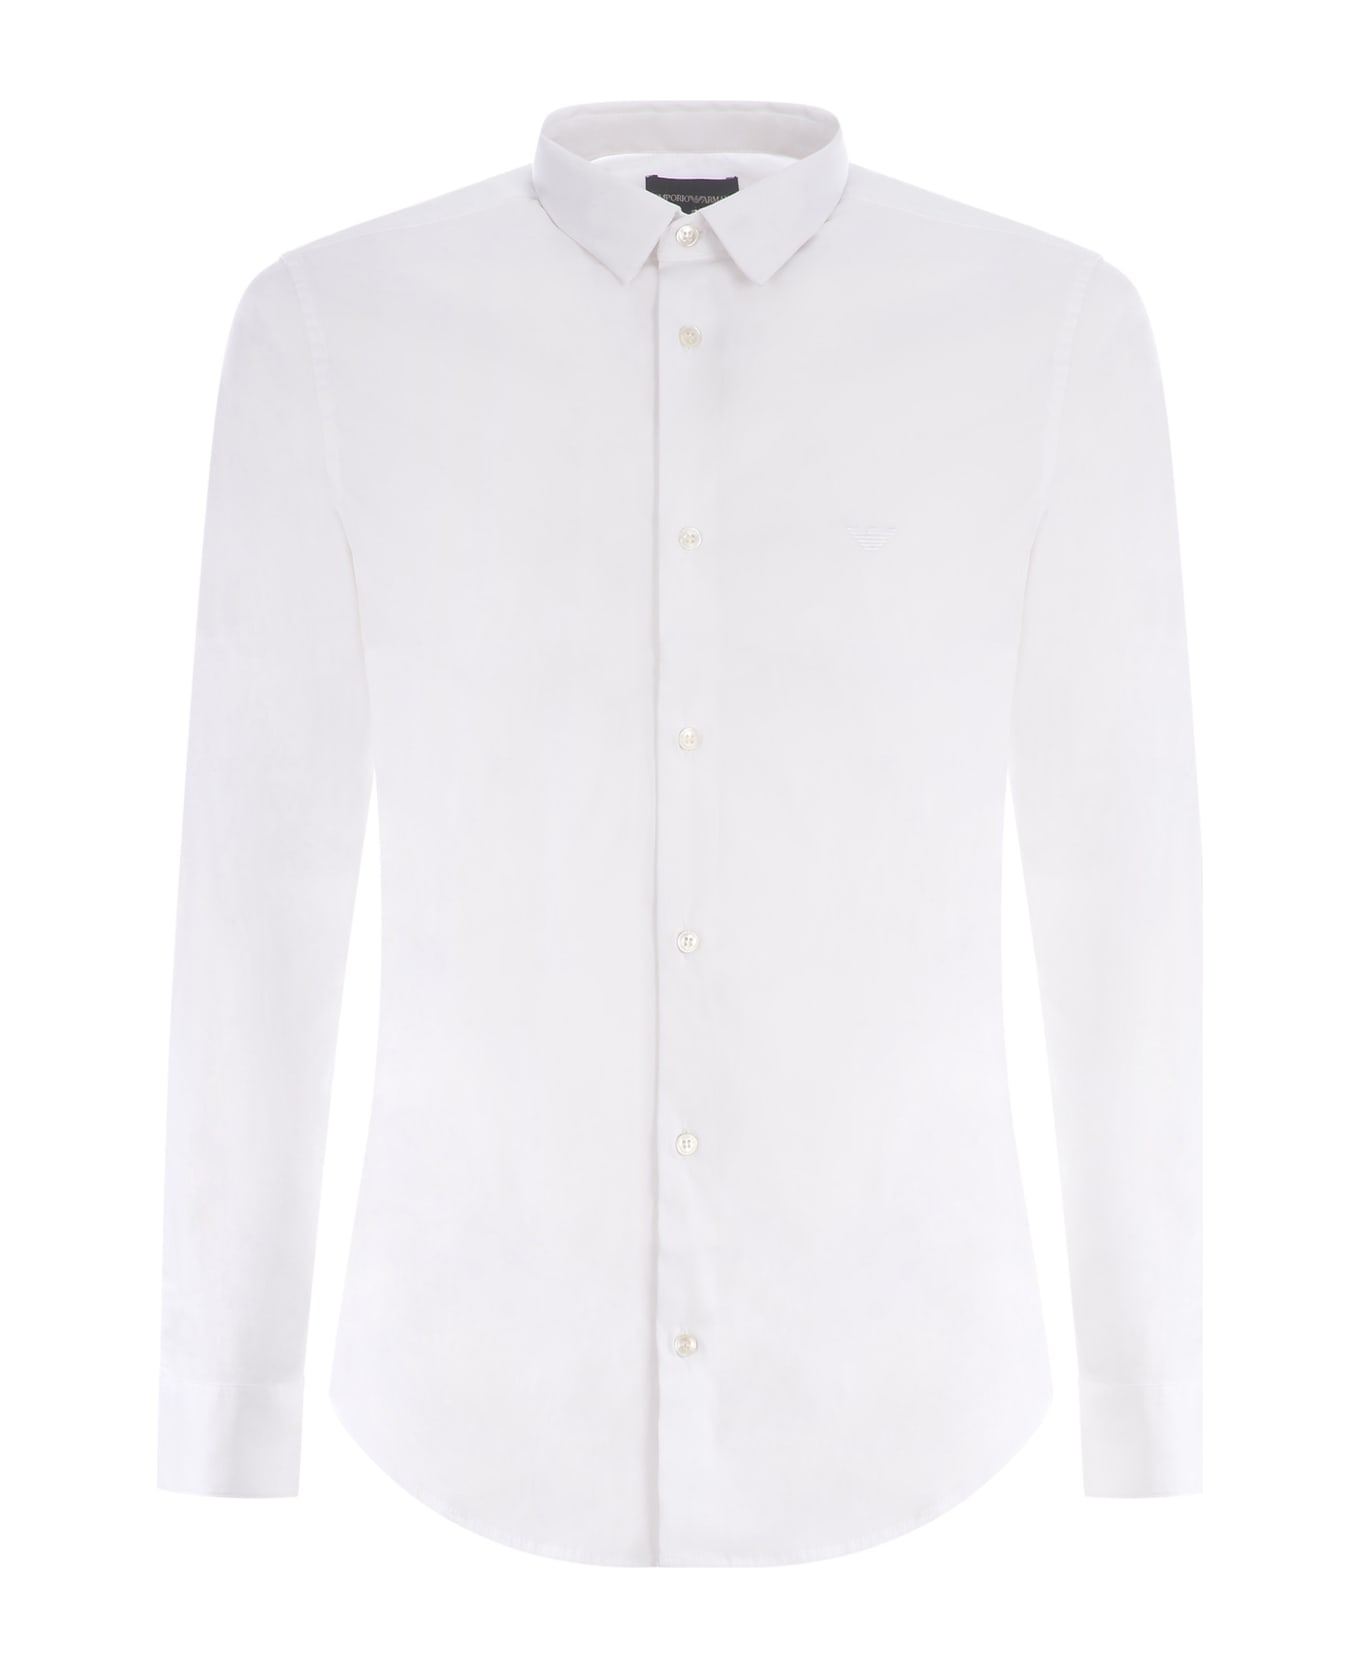 Giorgio Armani White Poplin Shirt Giorgio Armani - Bianco シャツ